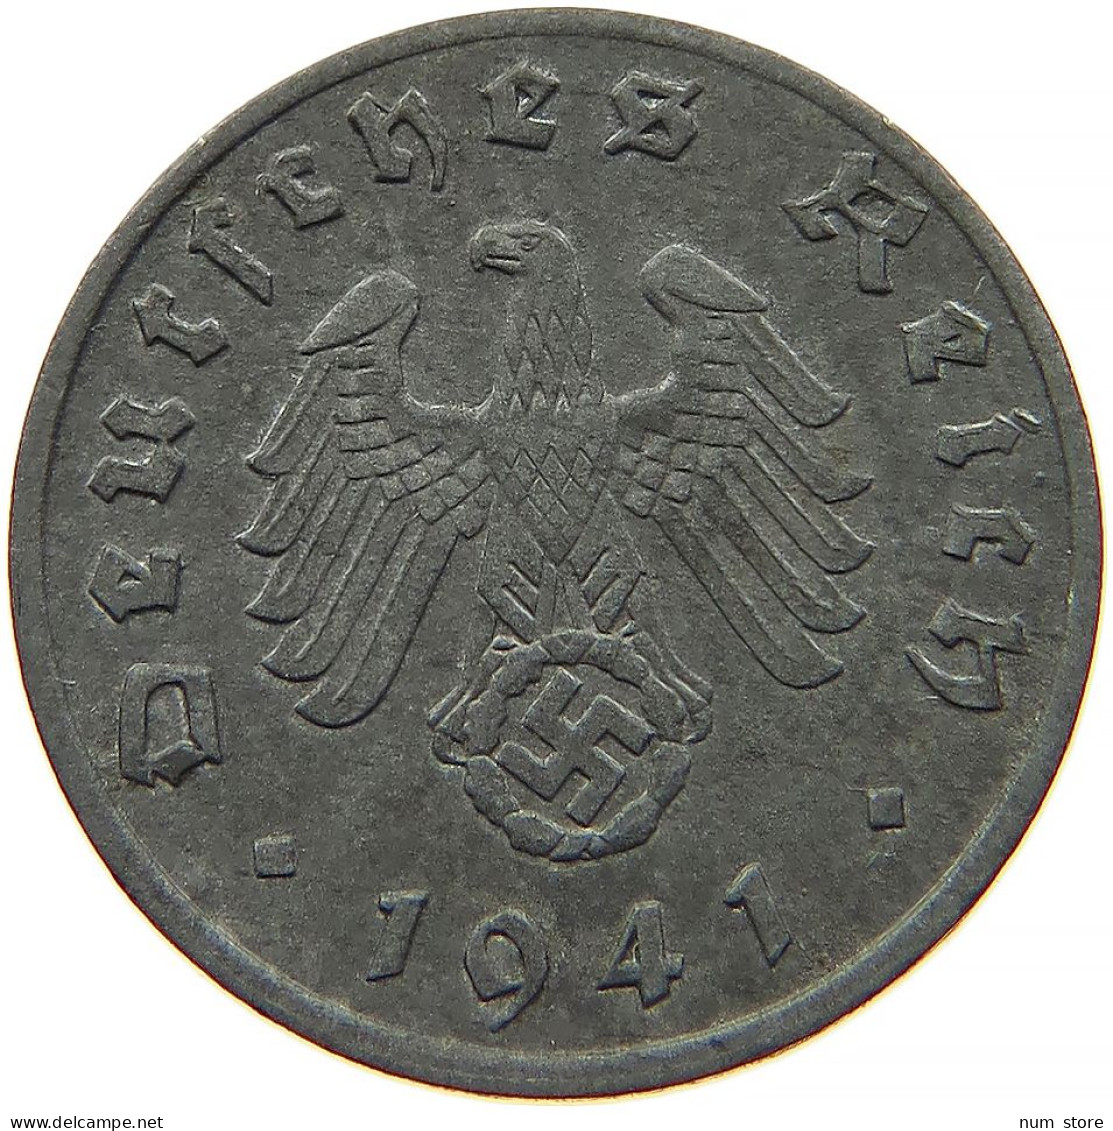 GERMANY 1 REICHSPFENNIG 1941 A #s091 1093 - 1 Reichspfennig